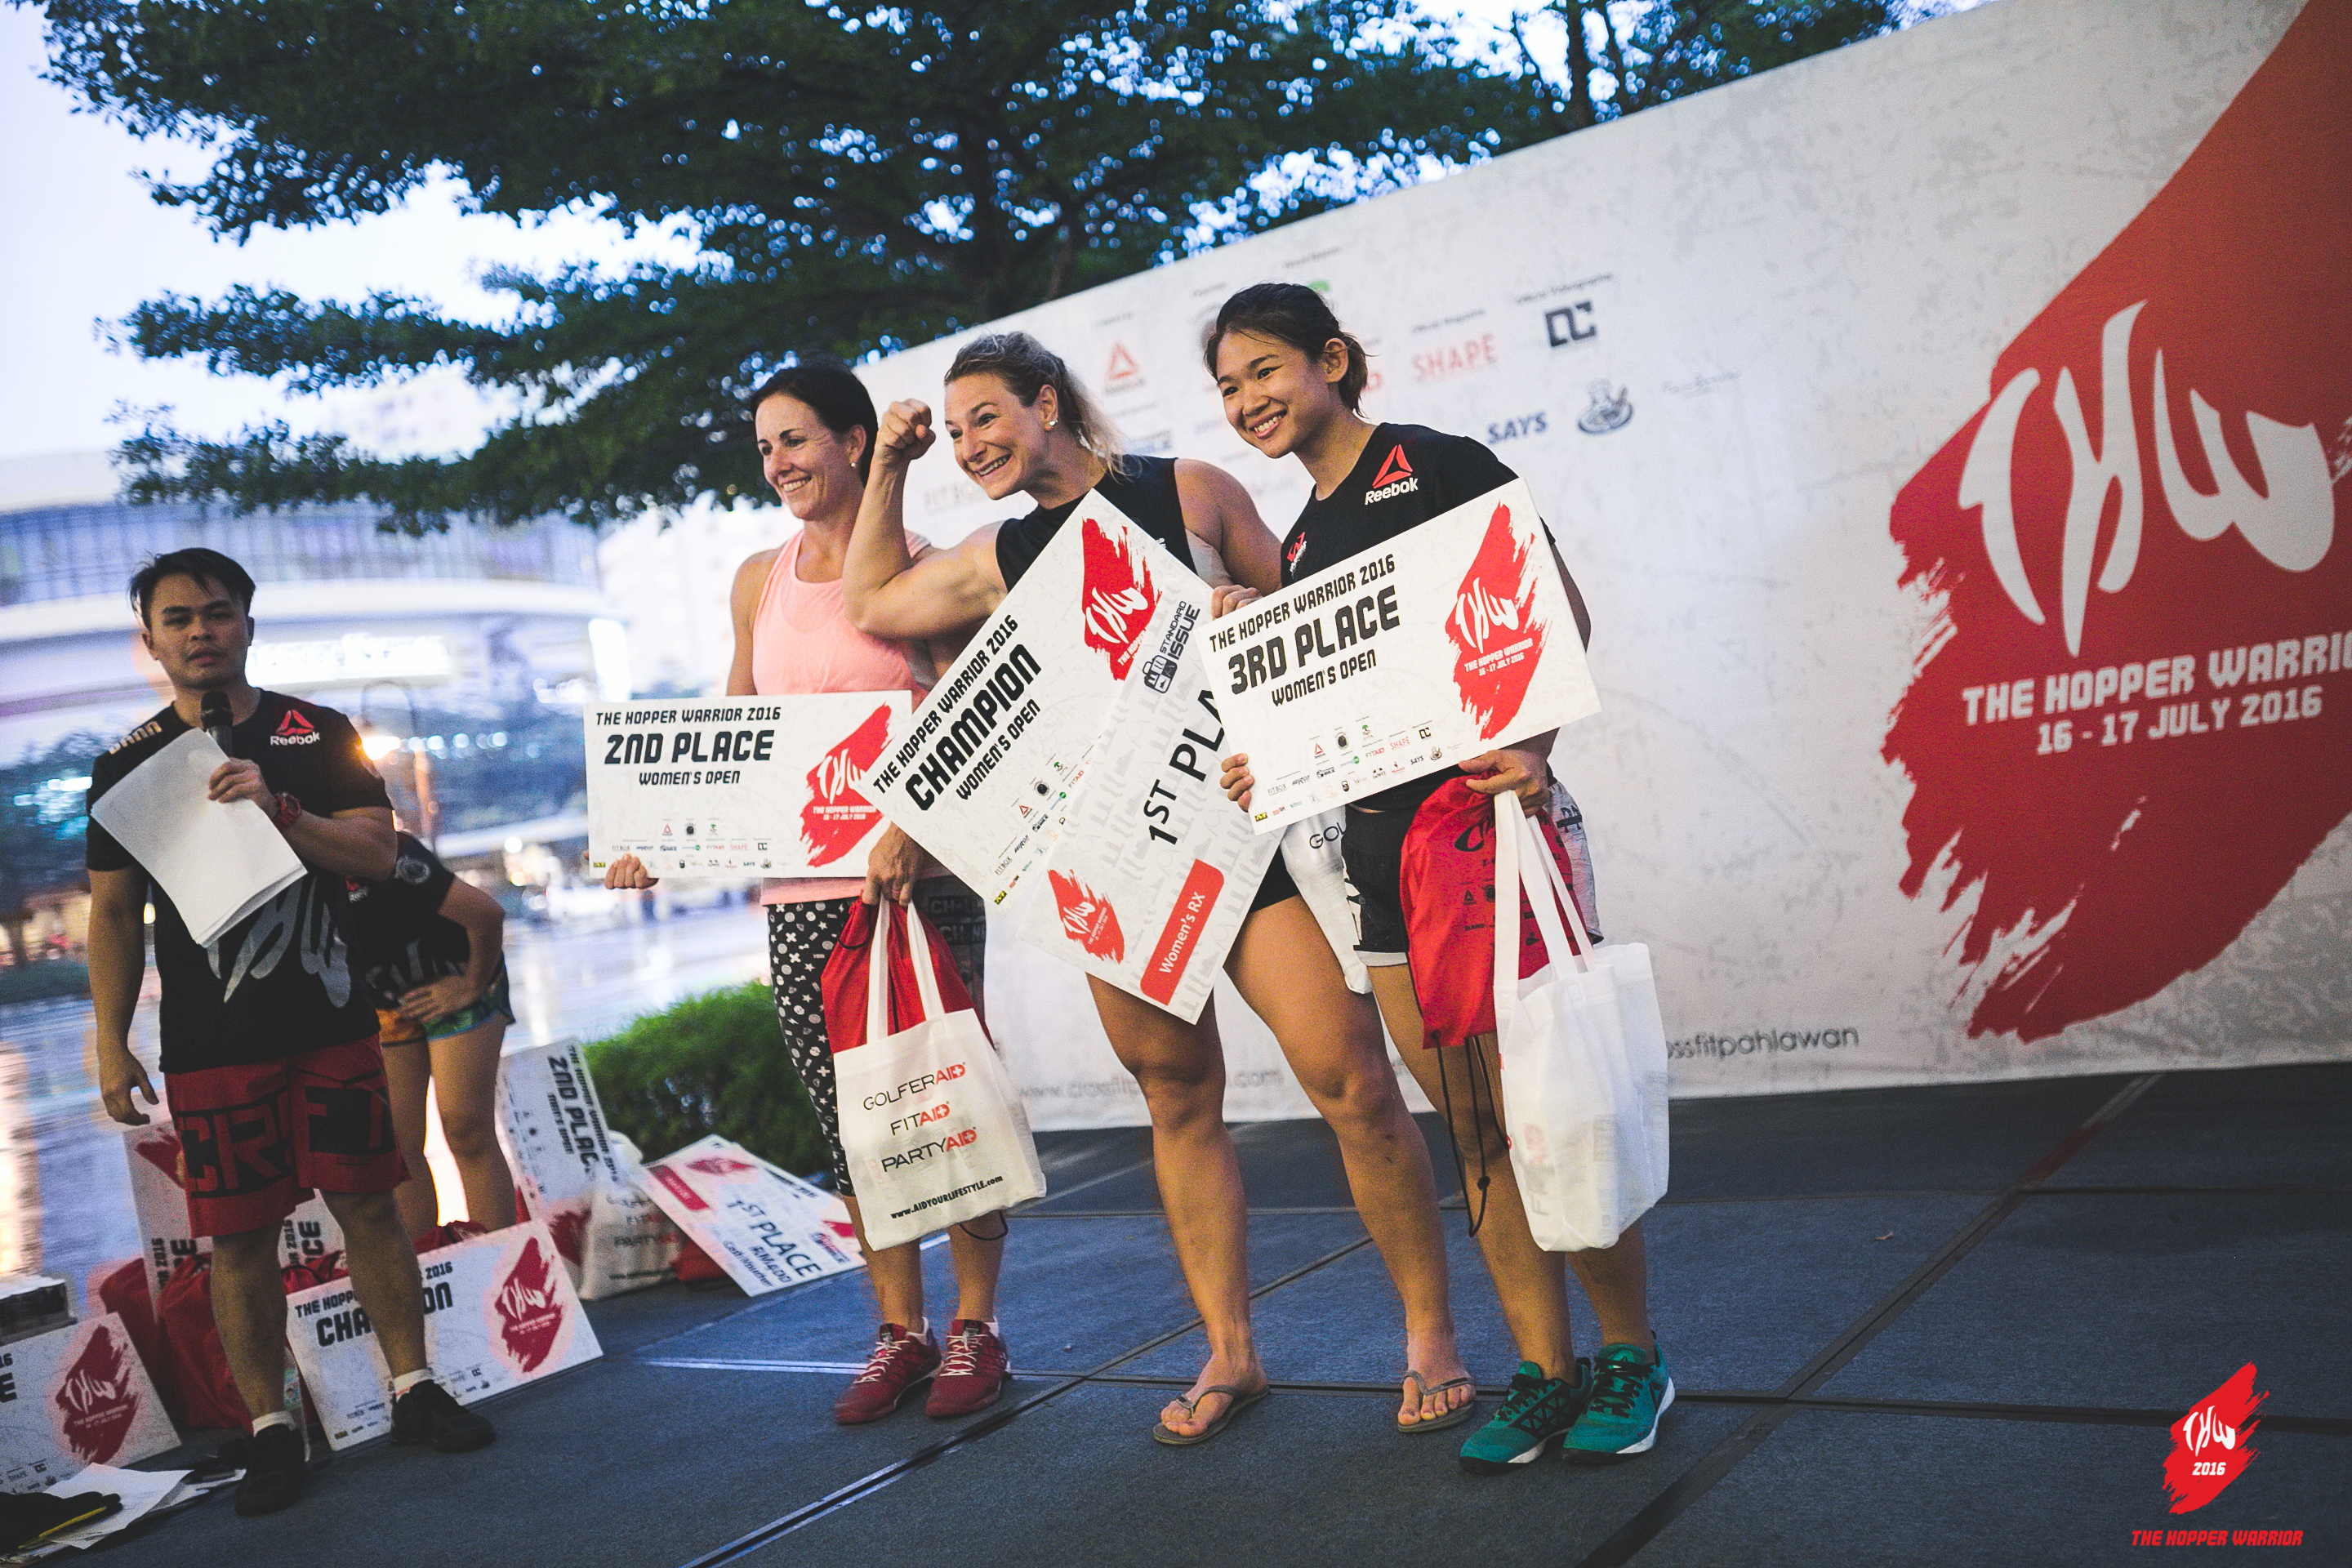 Women Rx podium winners. (Hopper Warrior)